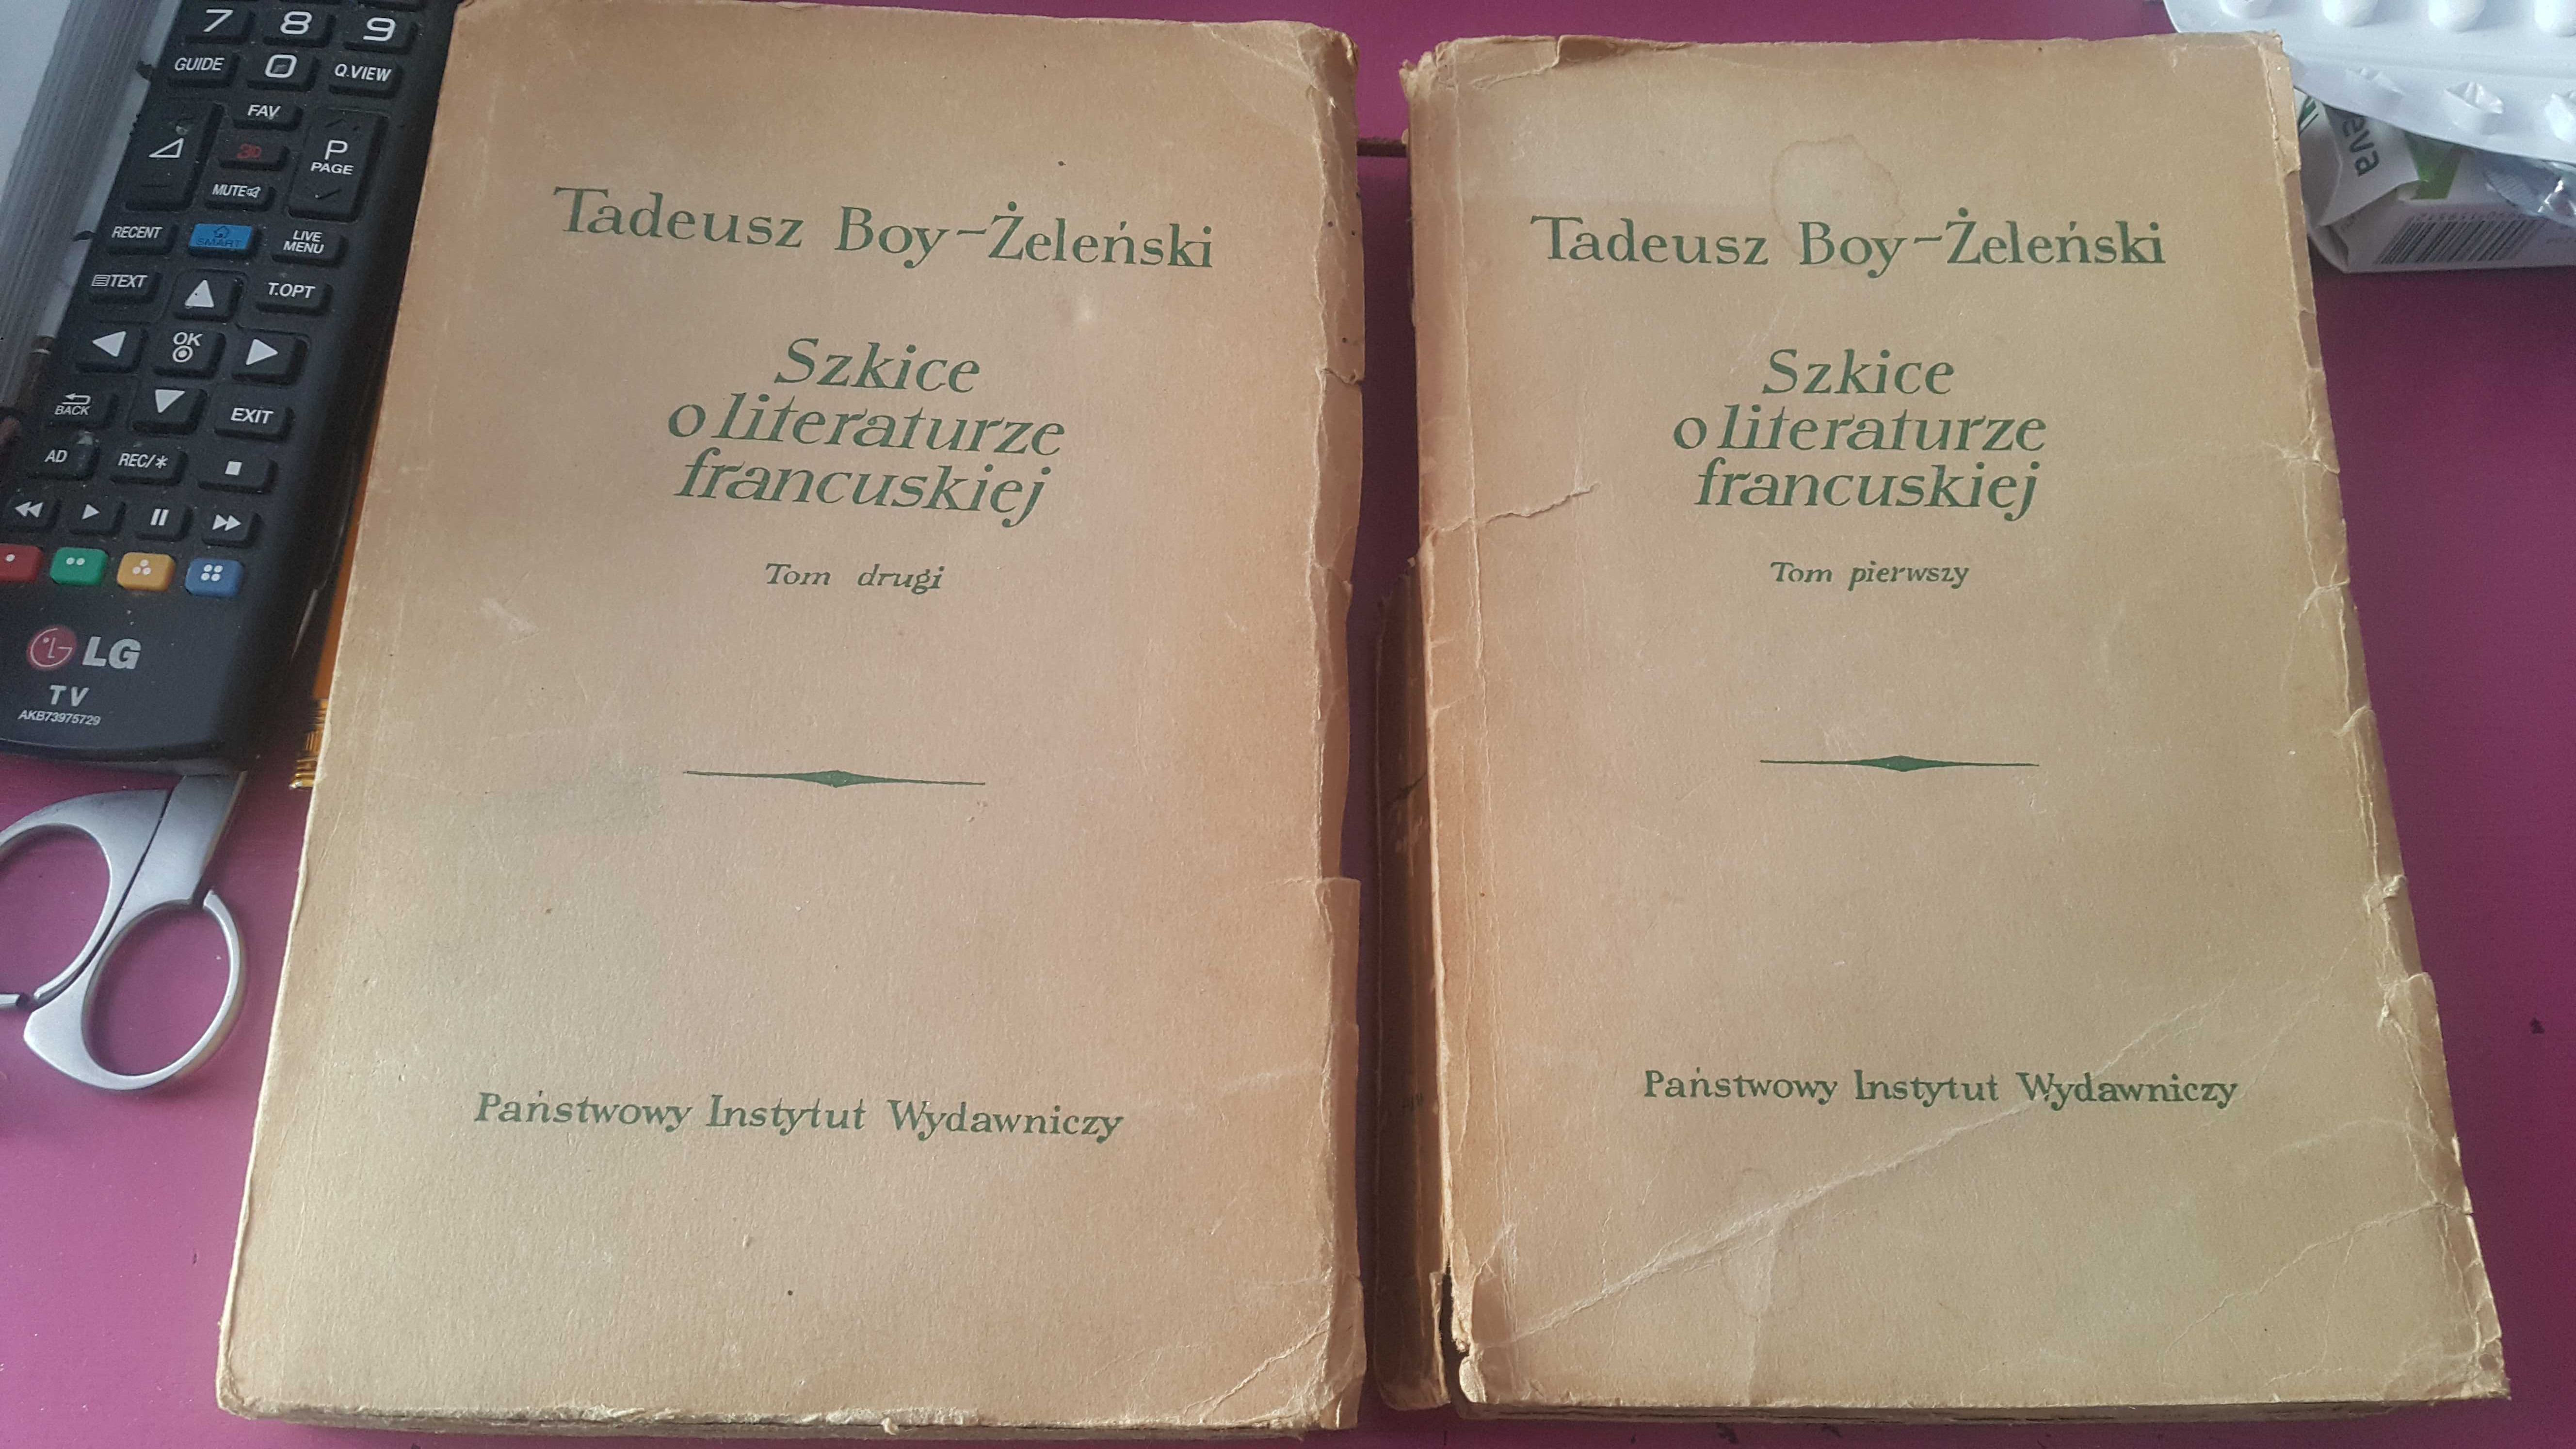 Tadeusz Boy-Żeleński "Szkice o literaturze francuskiej", 2 tomy.